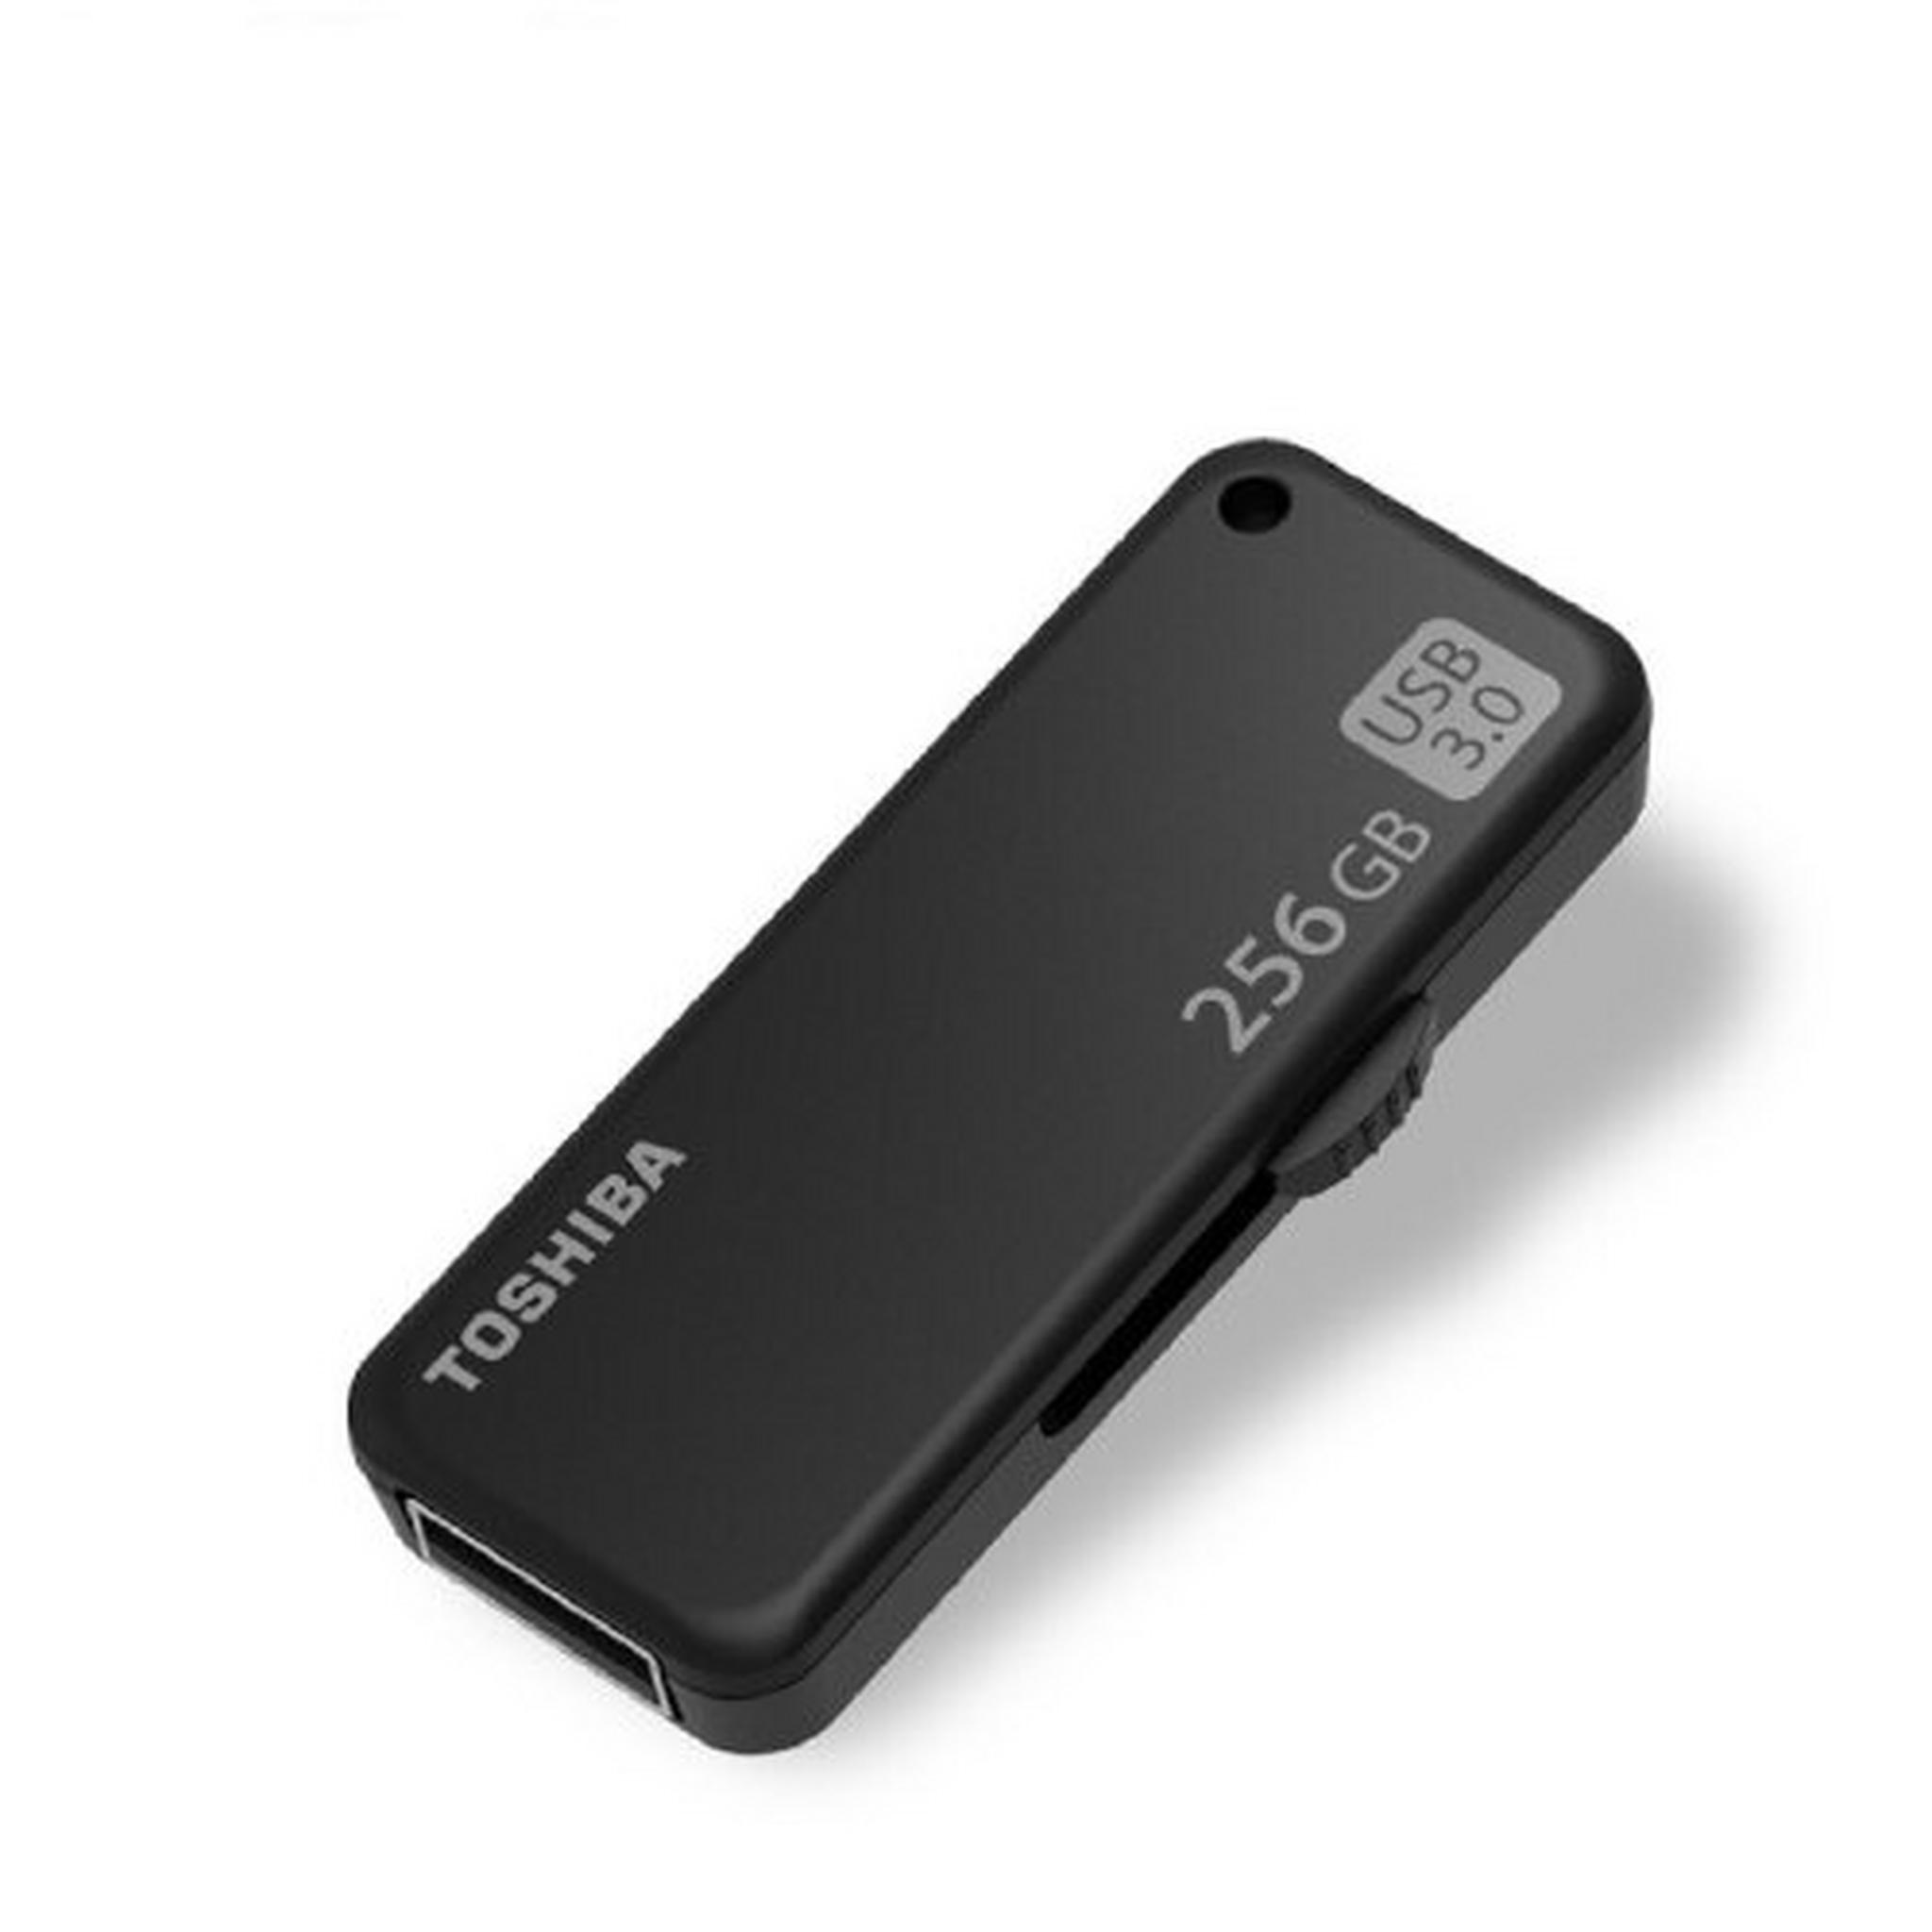 Toshiba Yamabiko 256GB 3.0 Flash Drive (U365W02560) - Black